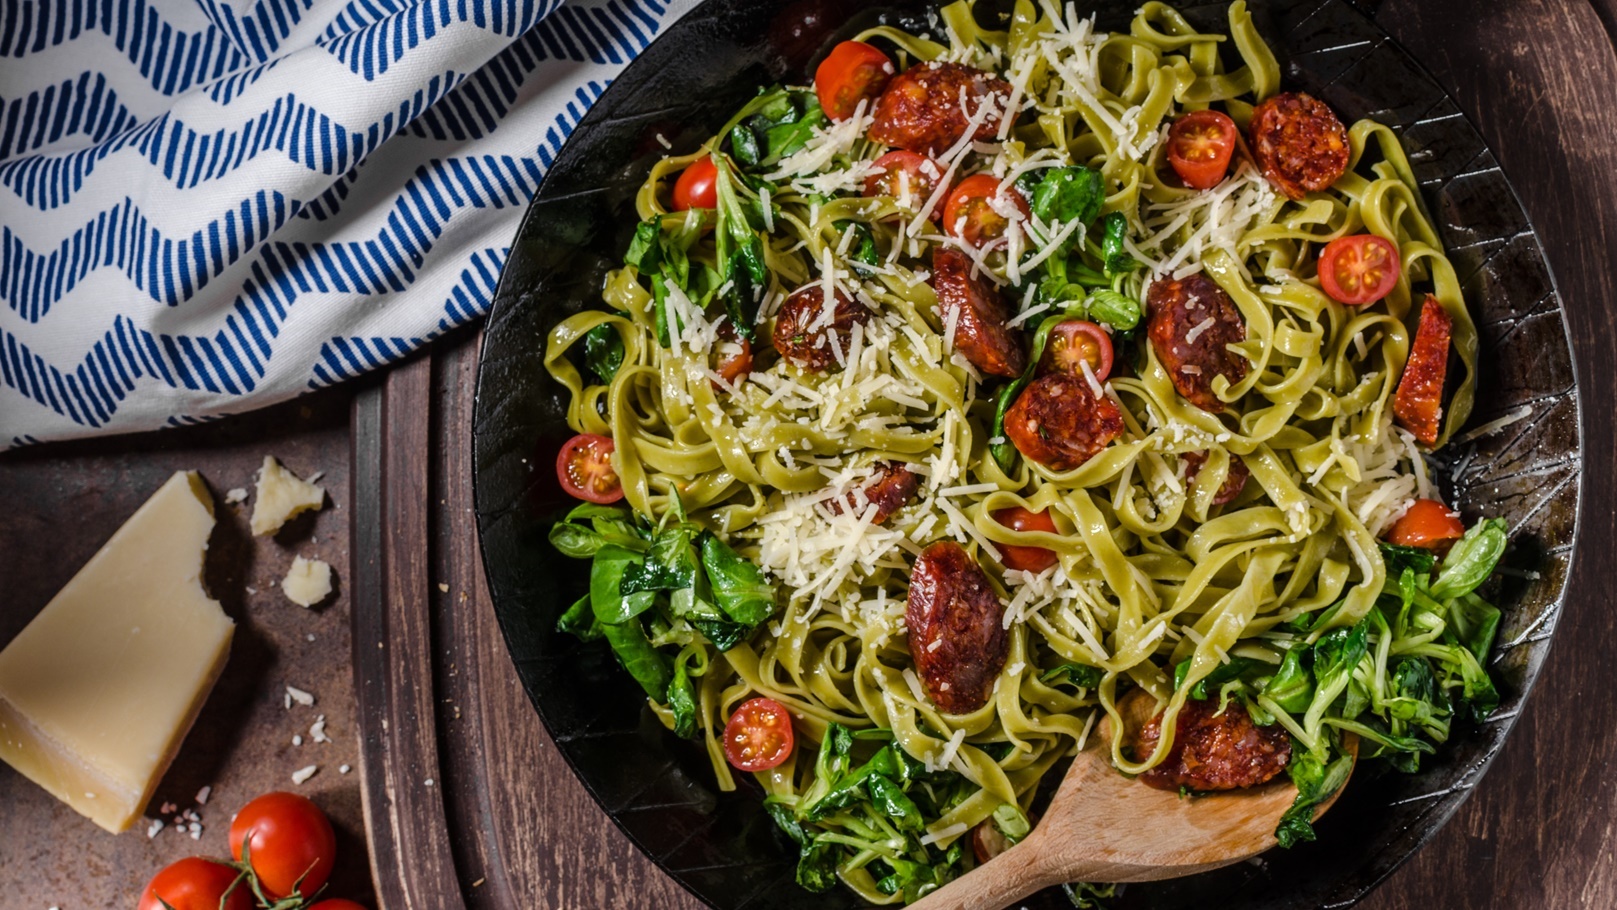 pasta-salad-with-sausage-2021-10-21-04-20-40-utc